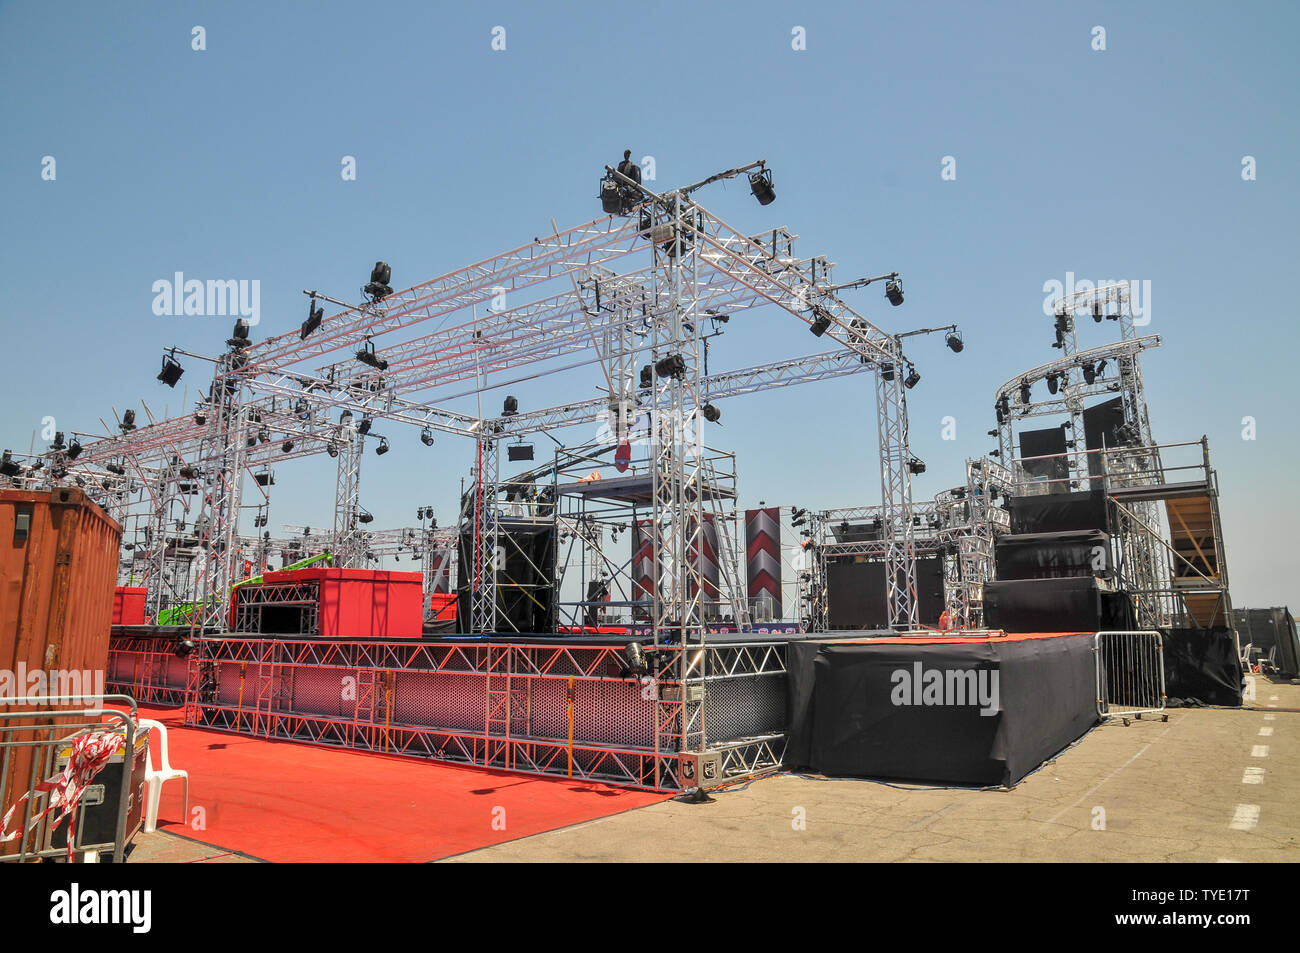 Costruzione di un Outdoor music festival stadio con archi di illuminazione utilizzati dalla TV israeliana produzione di Ninja israeliano Foto Stock